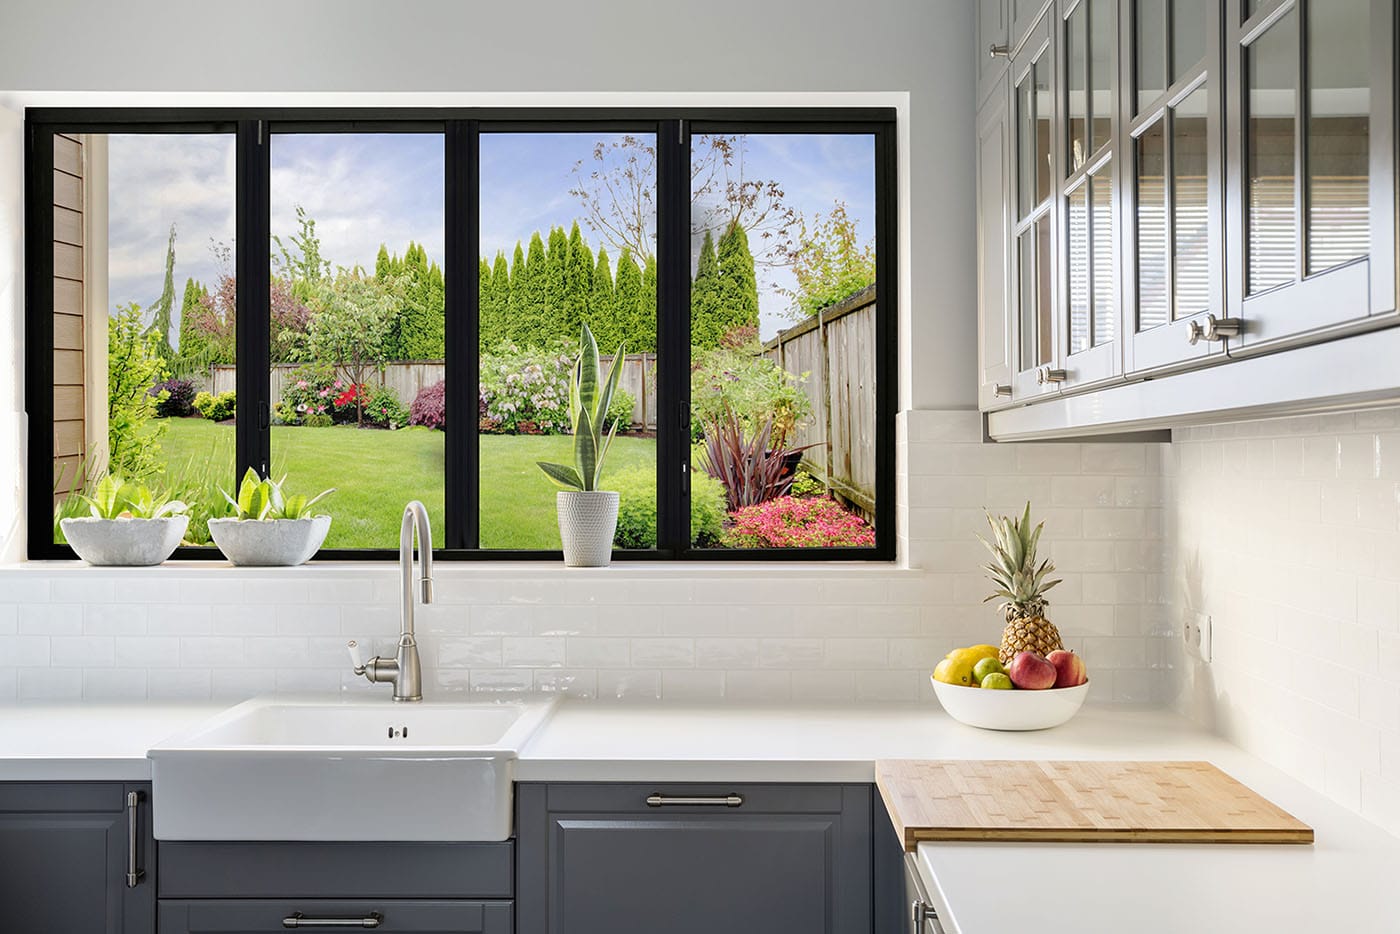 kitchen serving window design